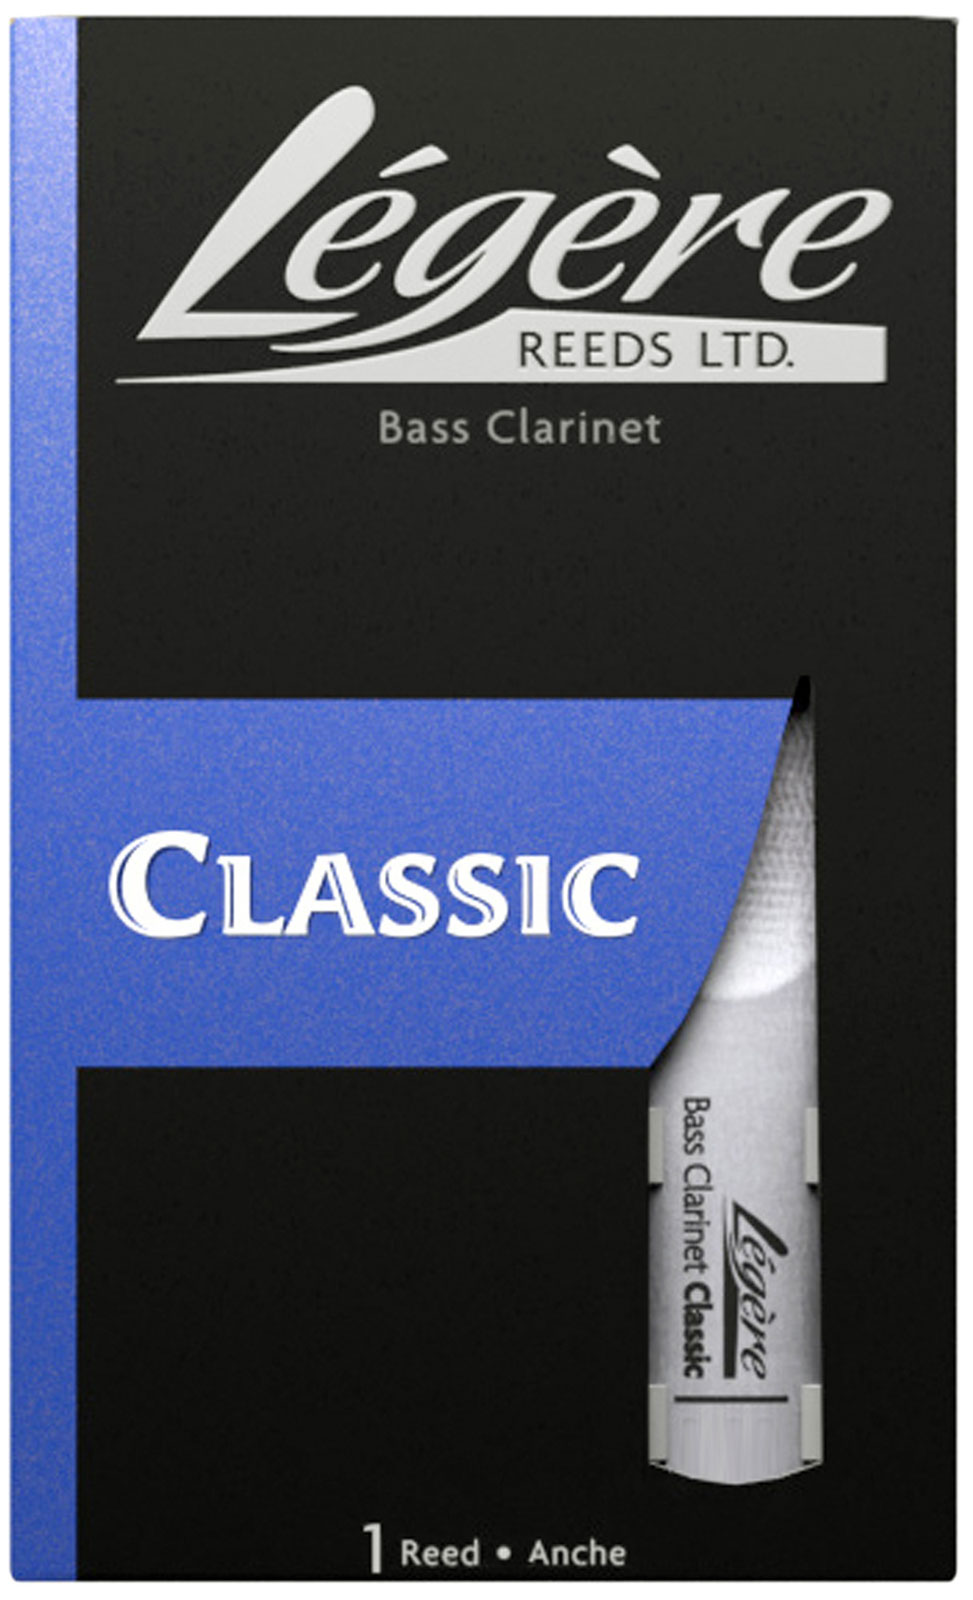 LEGERE CLASSIC 3.75 - CLAR BASSE